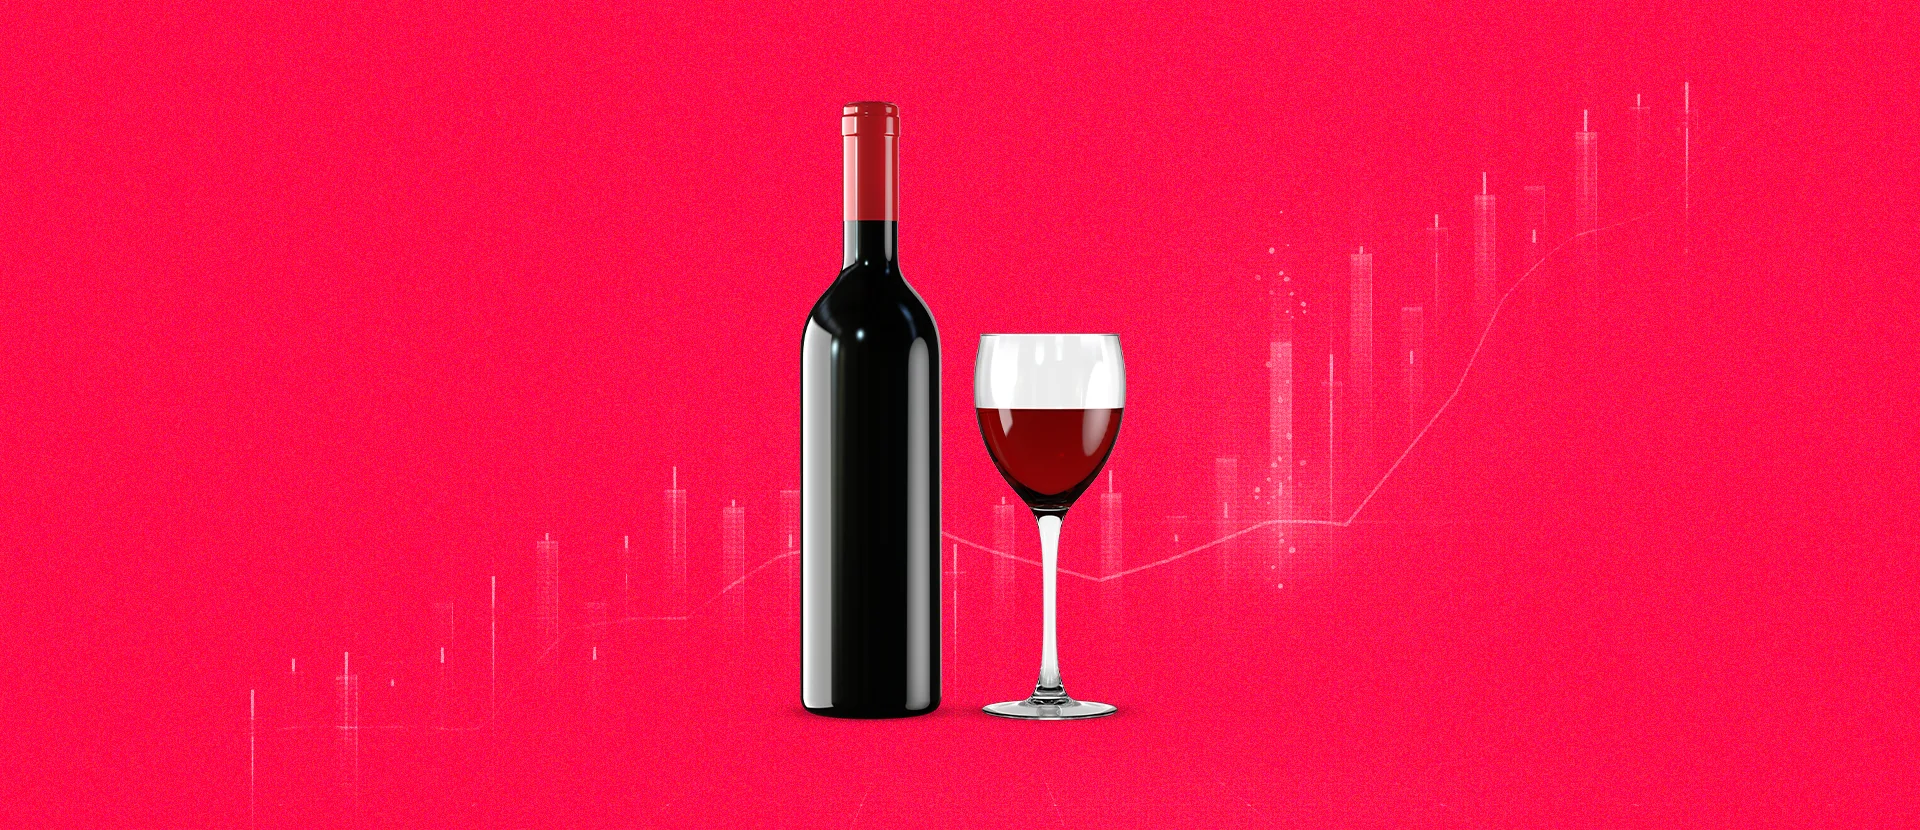 impacto econômico das vinícolas brasileiras